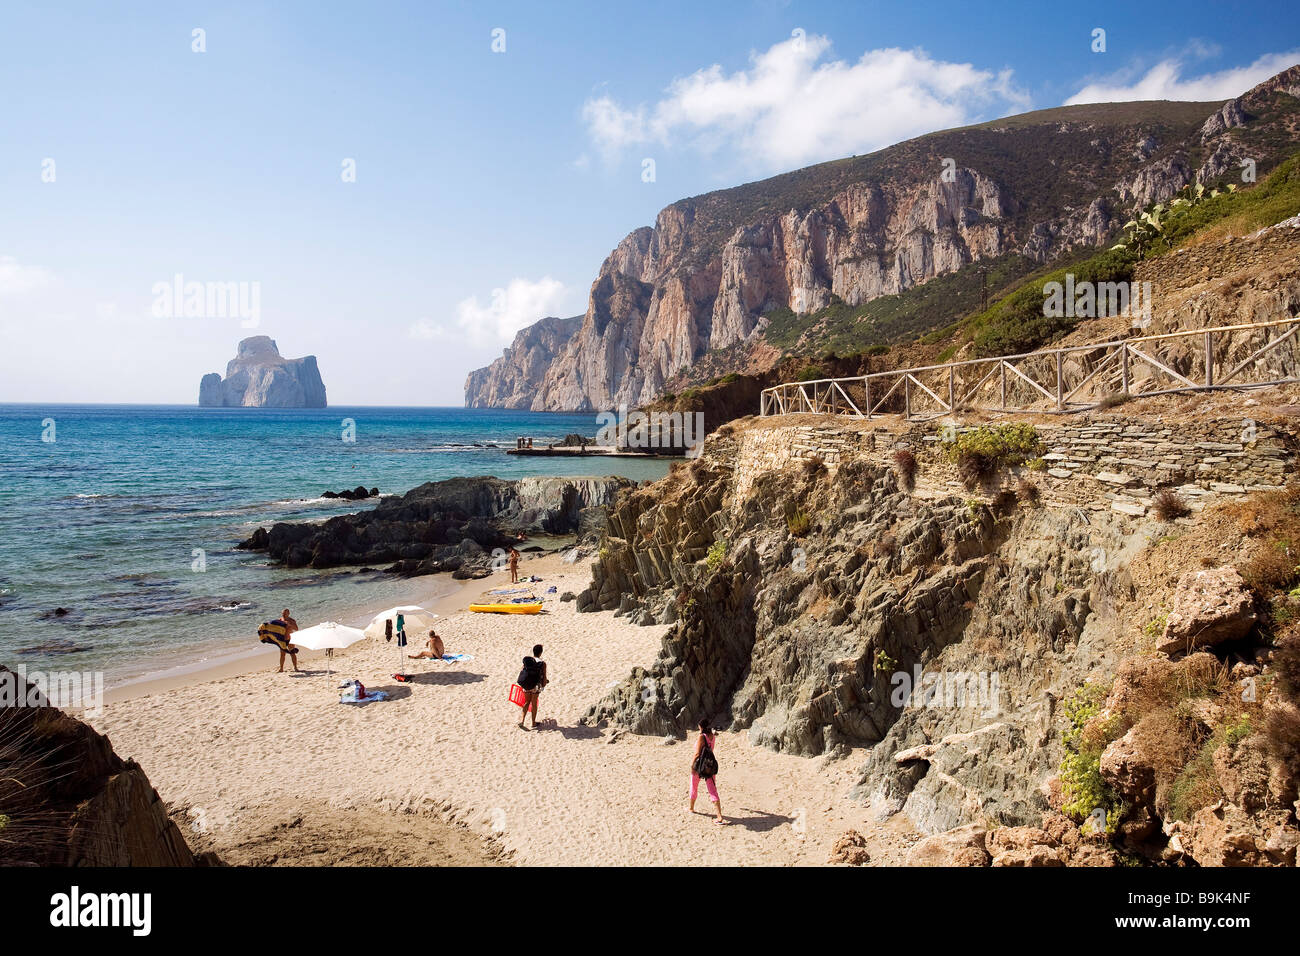 Italien Sardinien Carbonia Iglesias Provinz Die Strasse Nach Masua An Der Westlichen Kuste Nebida Hafen U Cauli Beach Stockfotografie Alamy